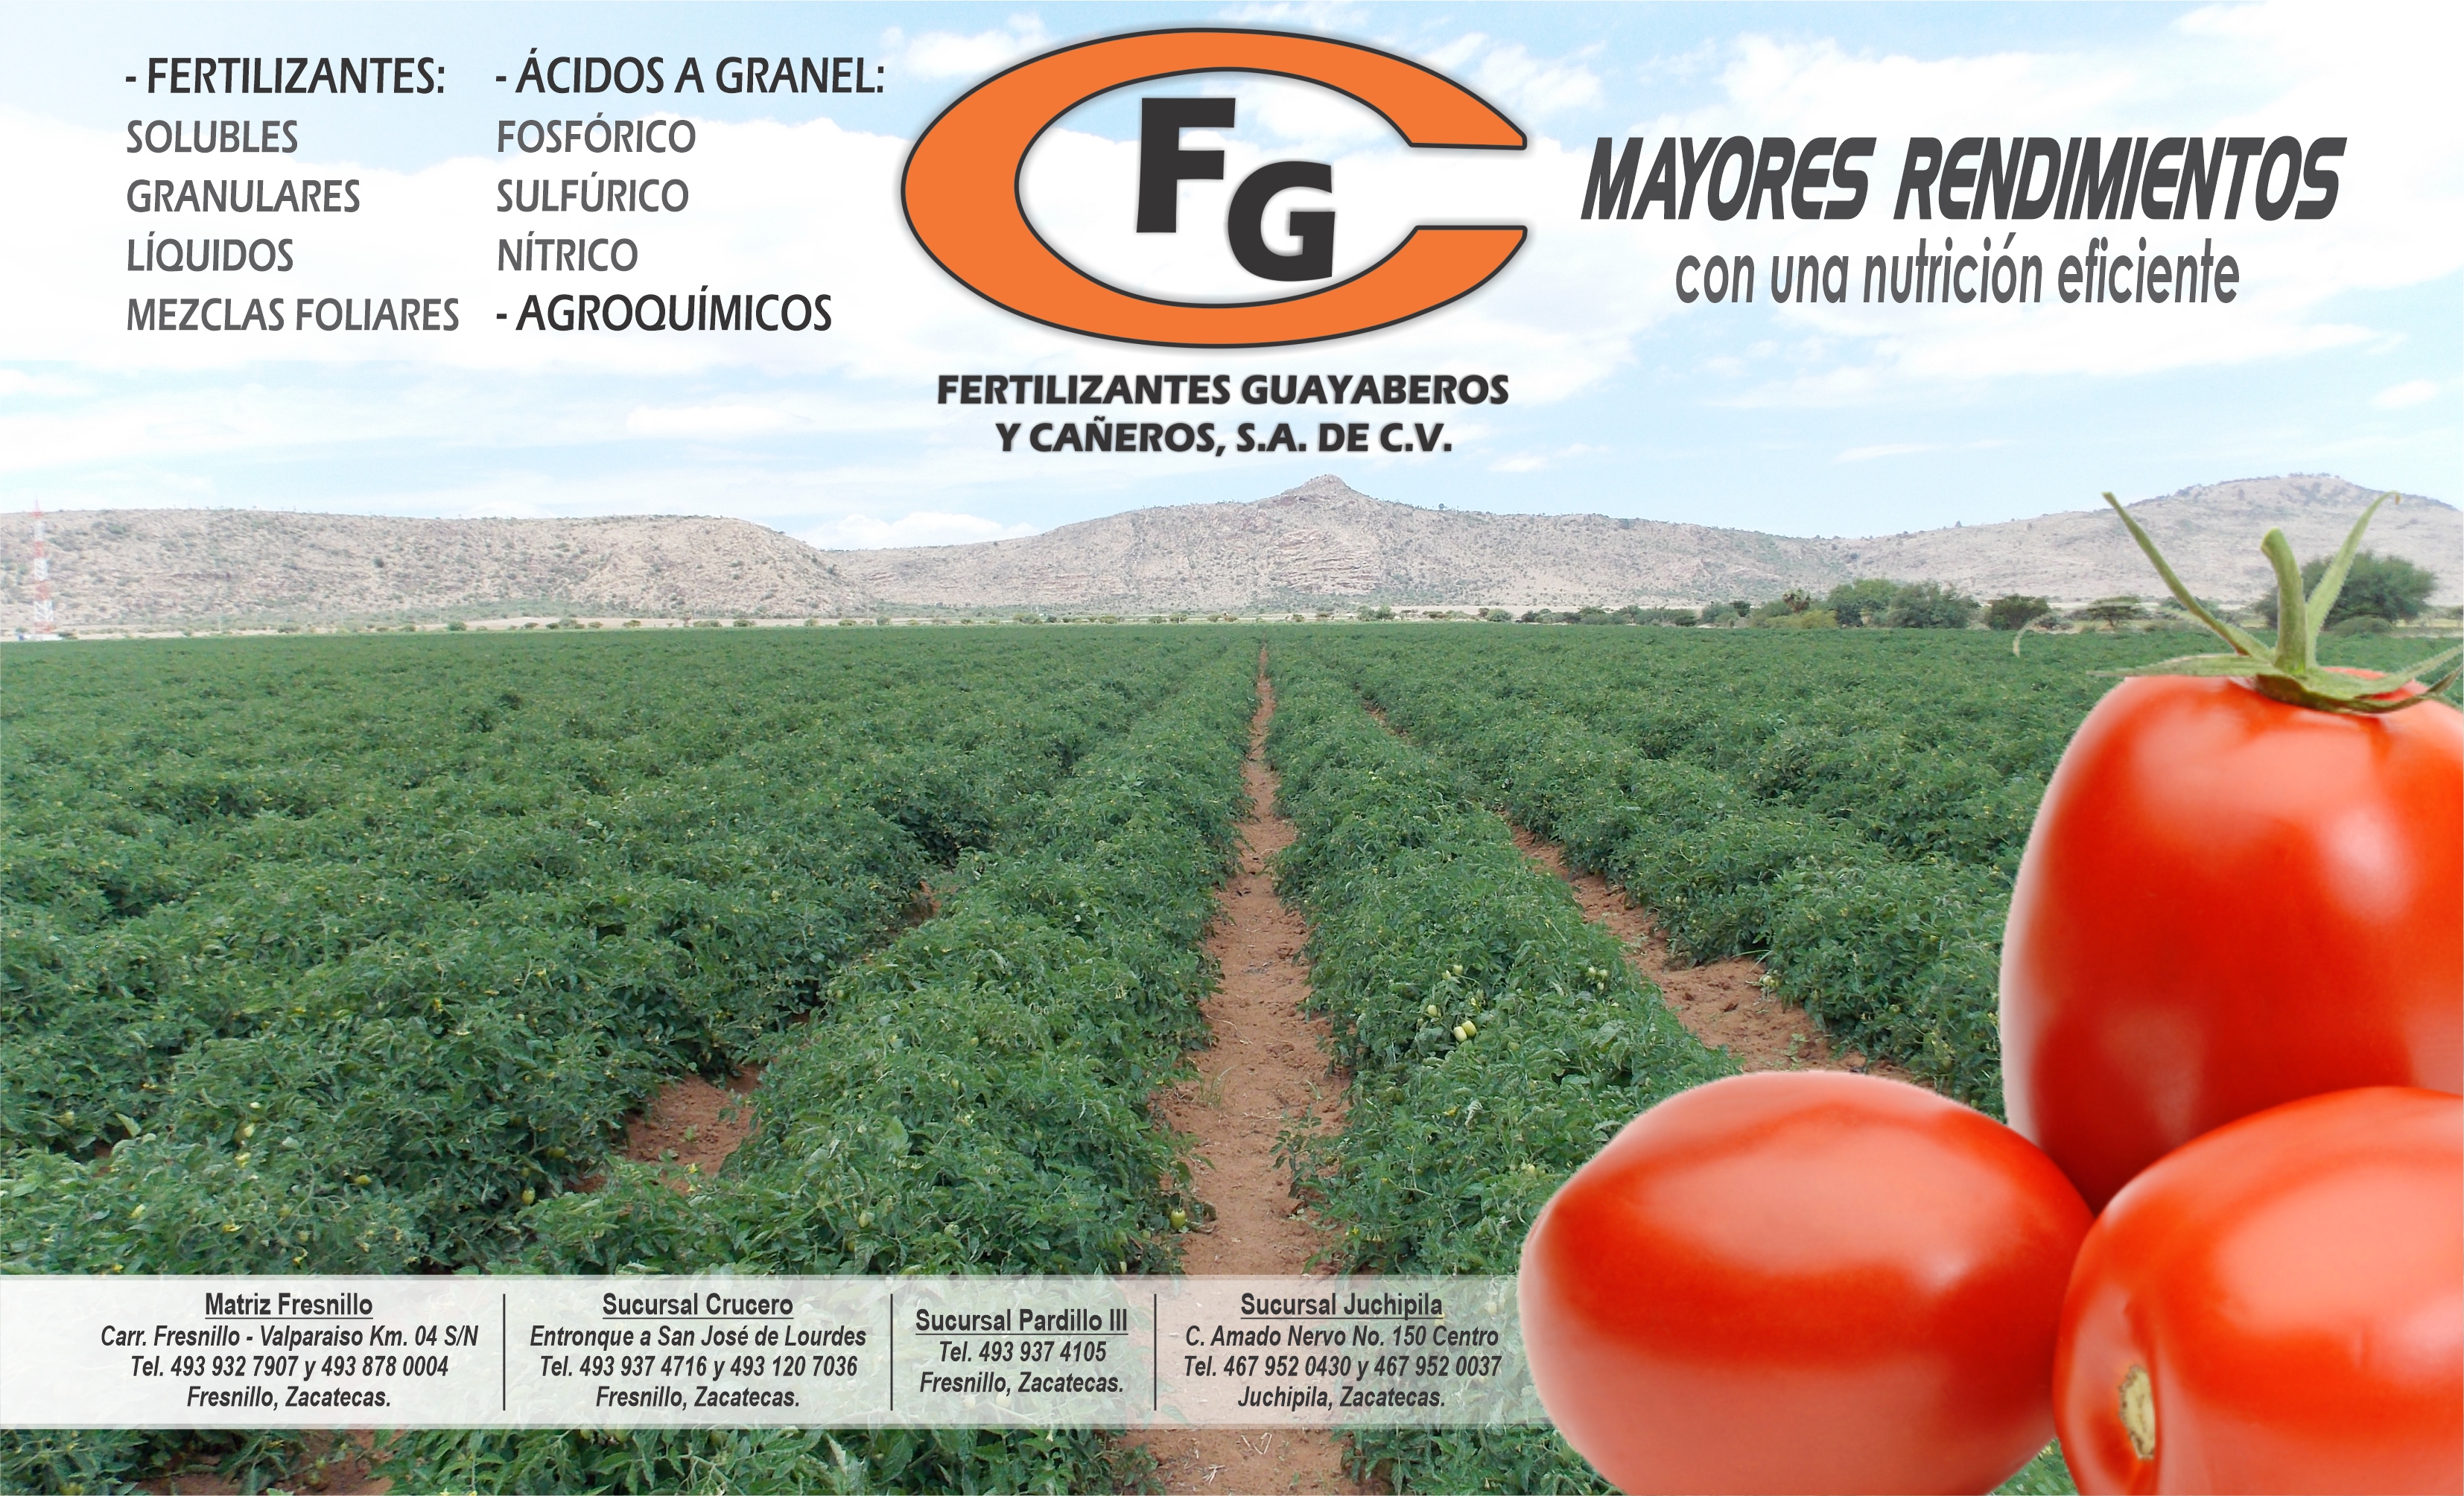 Fertilizantes Guayaberos y Cañeros, S.A. de C.V.